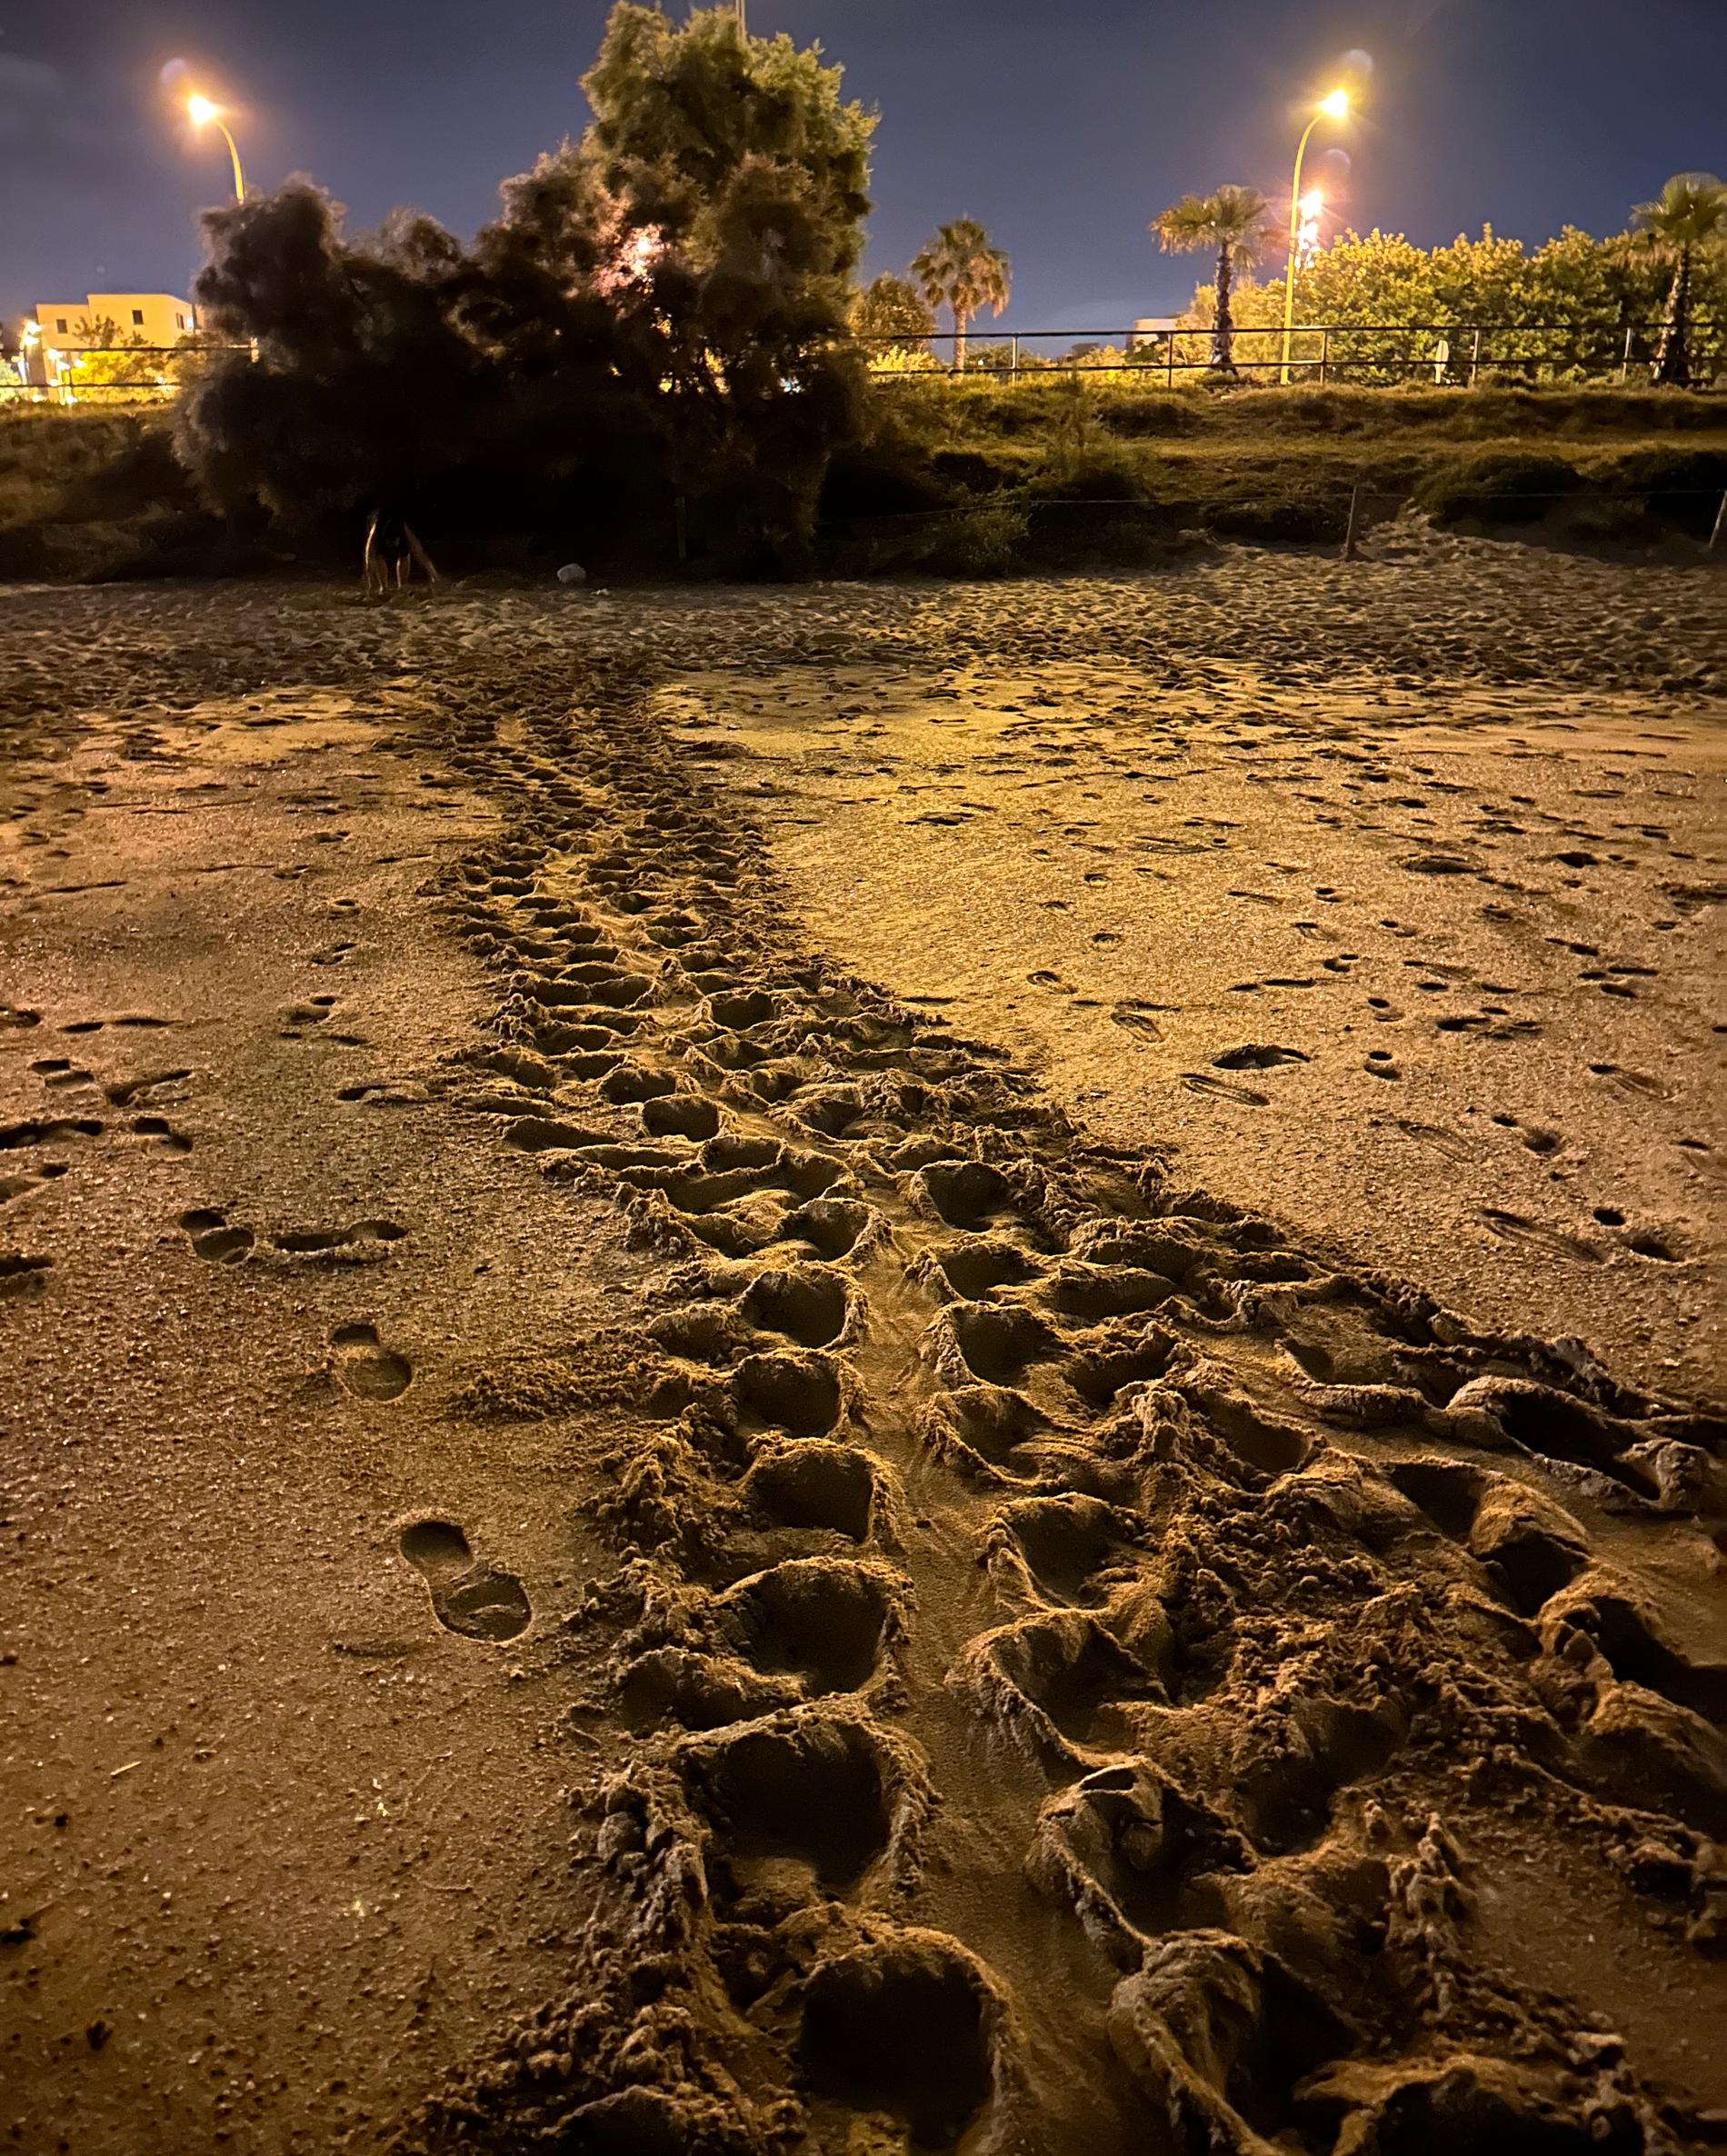 Vad Markus Olsson finner extra ovanligt är att havssköldpaddan tog sig upp på stranden Pere Antoni  mitt i Palma: ”Det är så mycket ljud, ljus och andra störningar runtomkring”.